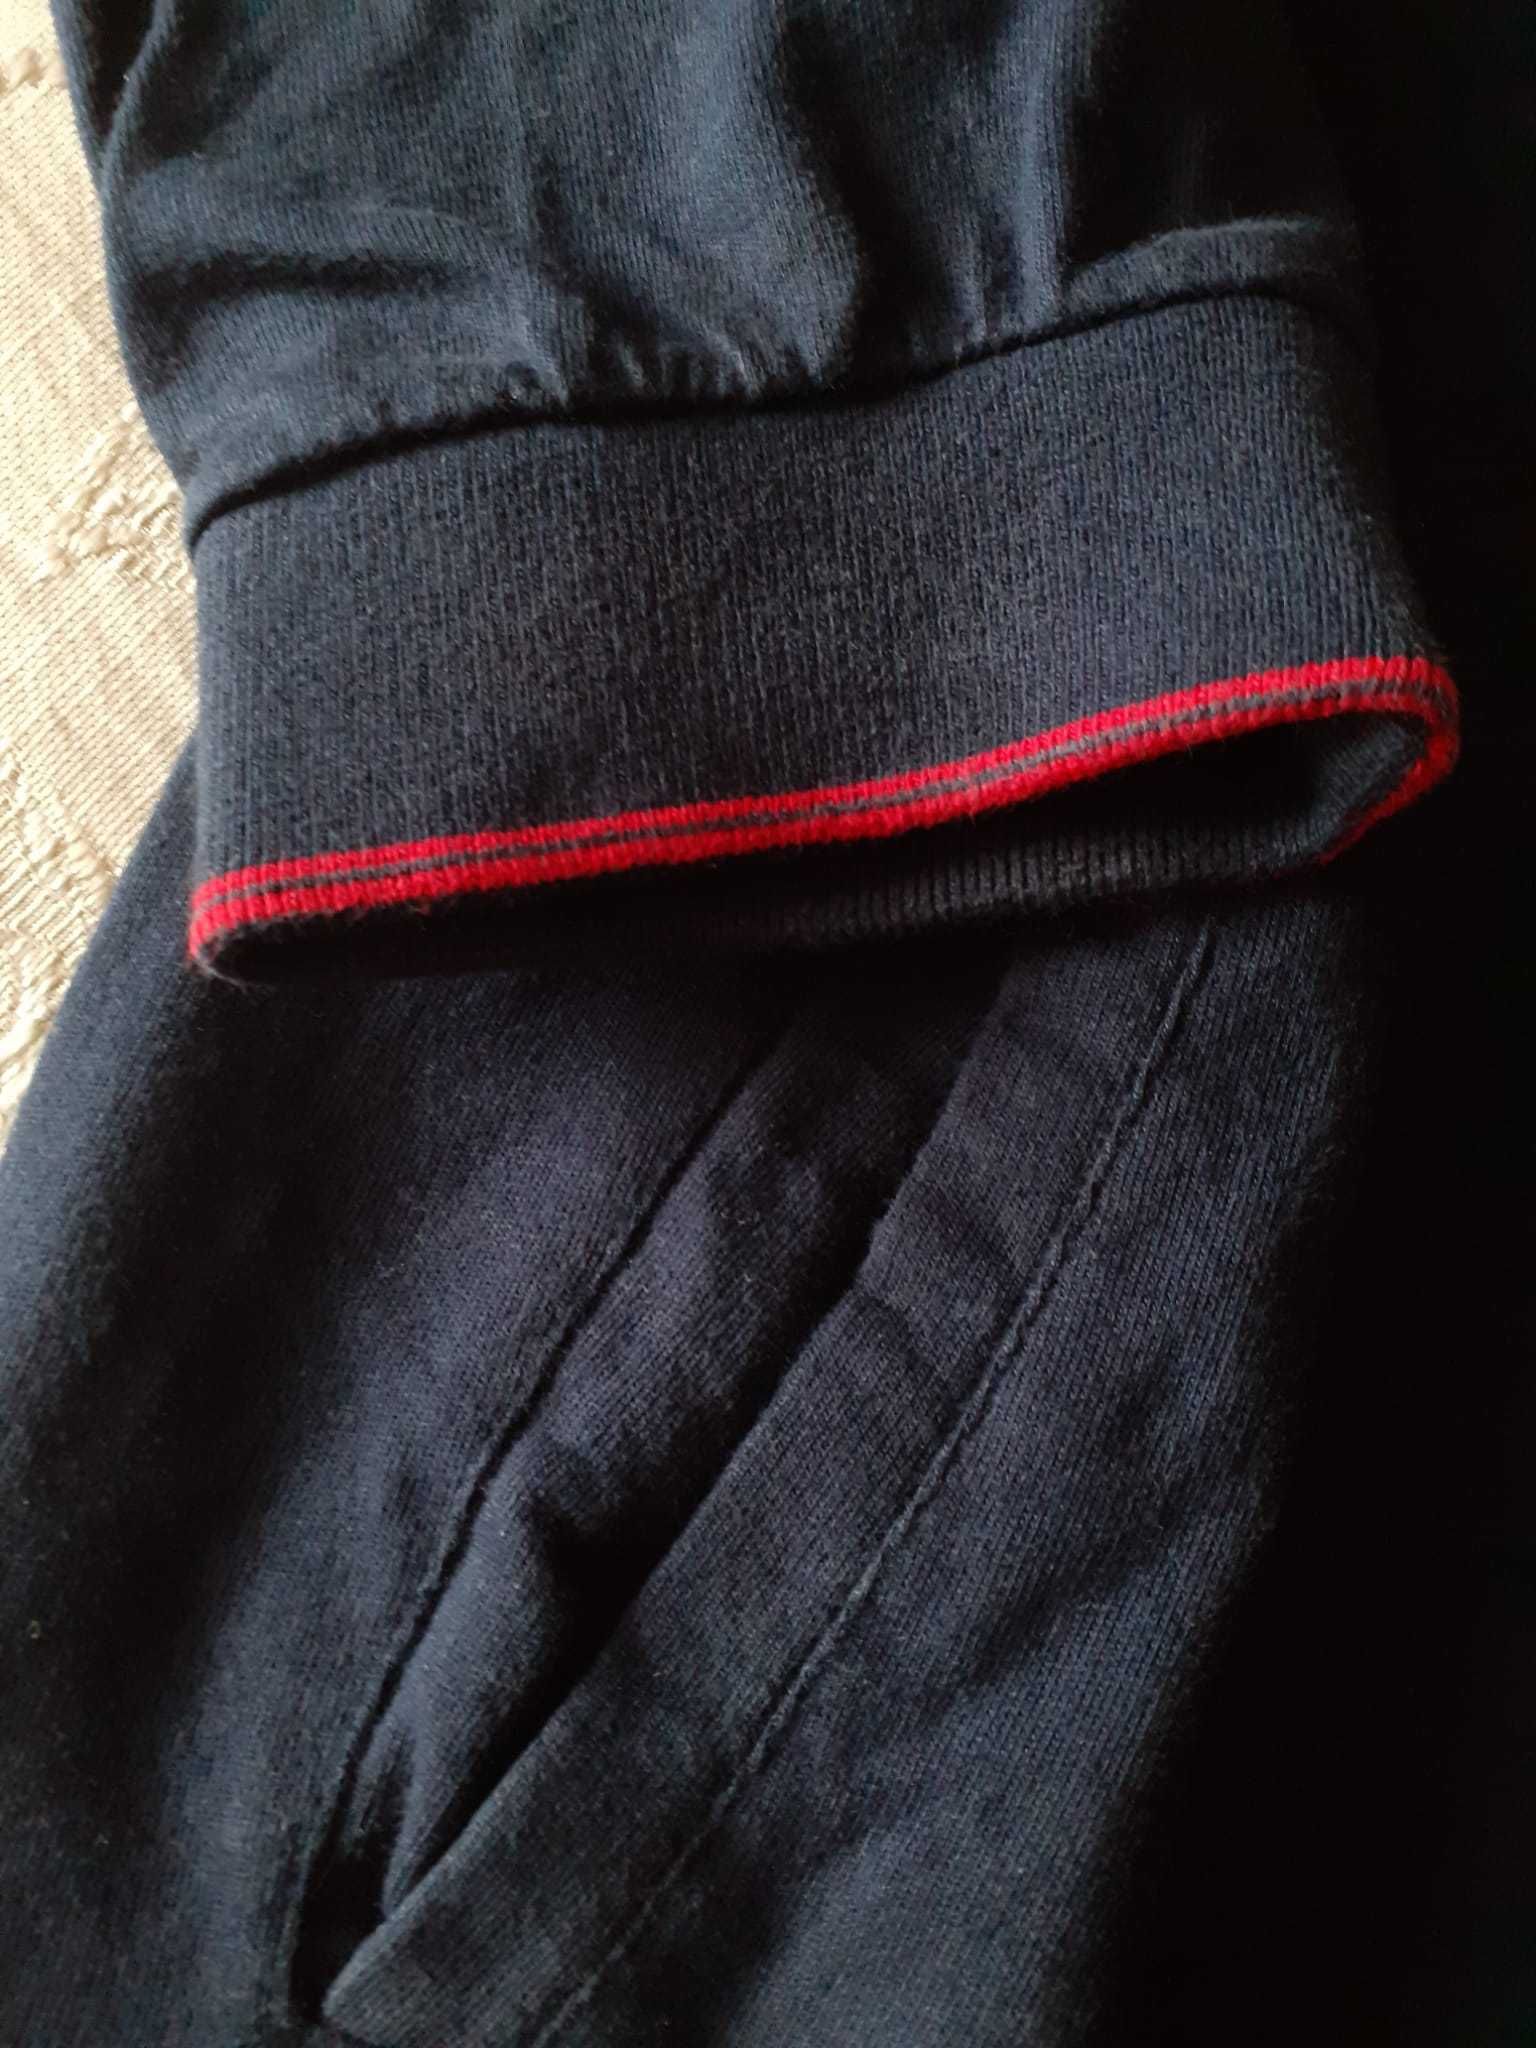 Camisola de algodão da Mayoral - rapaz 18 anos (172cm)